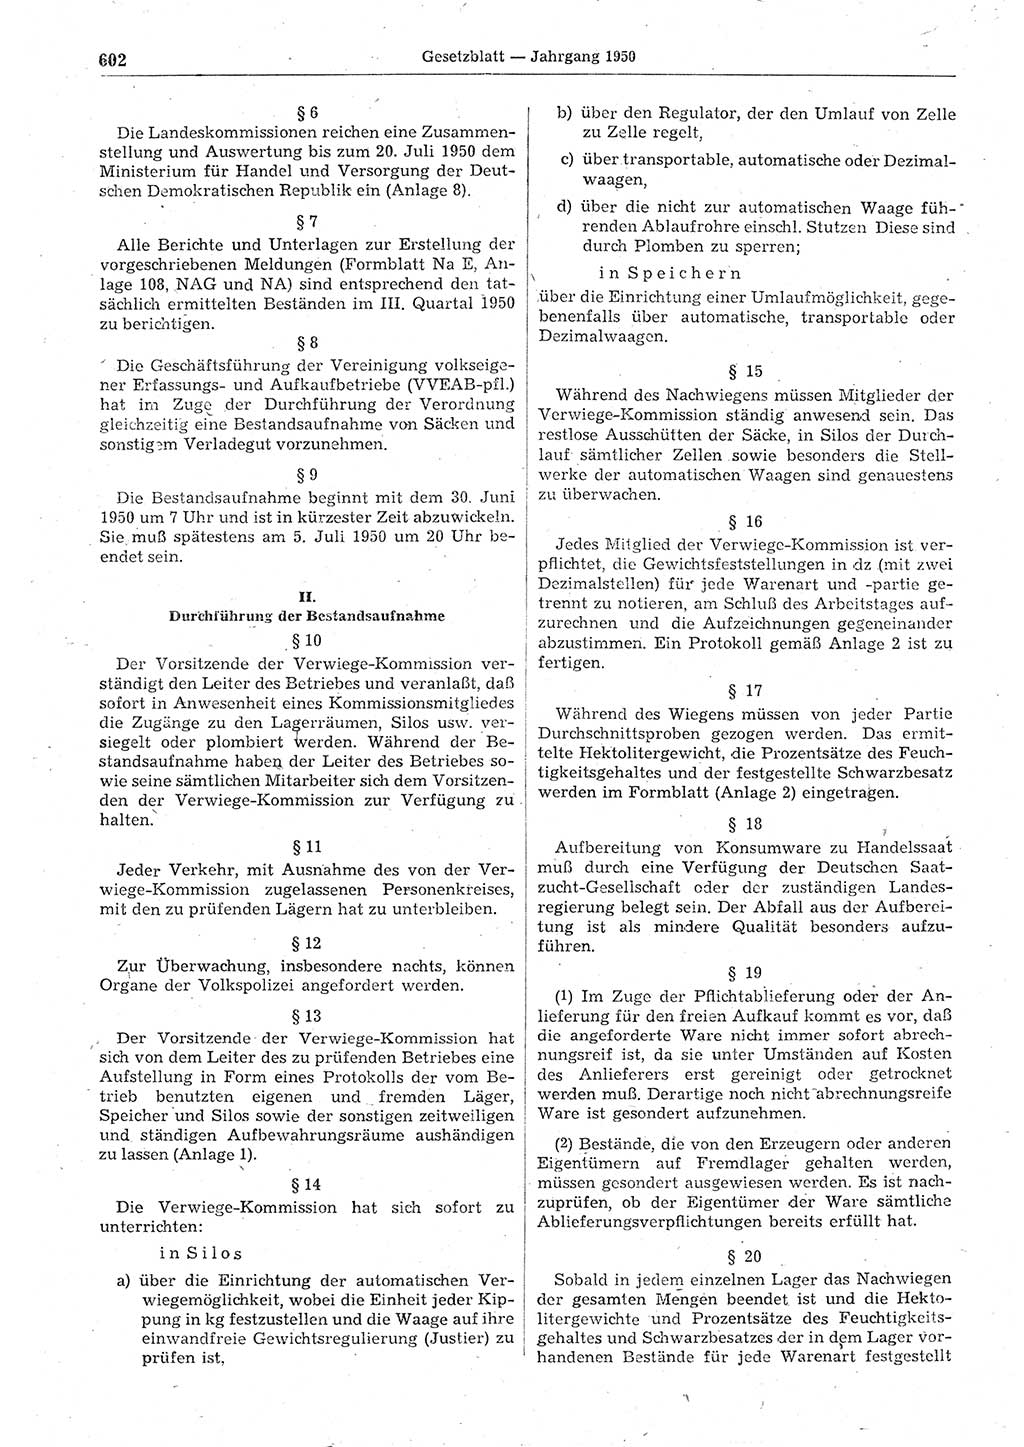 Gesetzblatt (GBl.) der Deutschen Demokratischen Republik (DDR) 1950, Seite 602 (GBl. DDR 1950, S. 602)